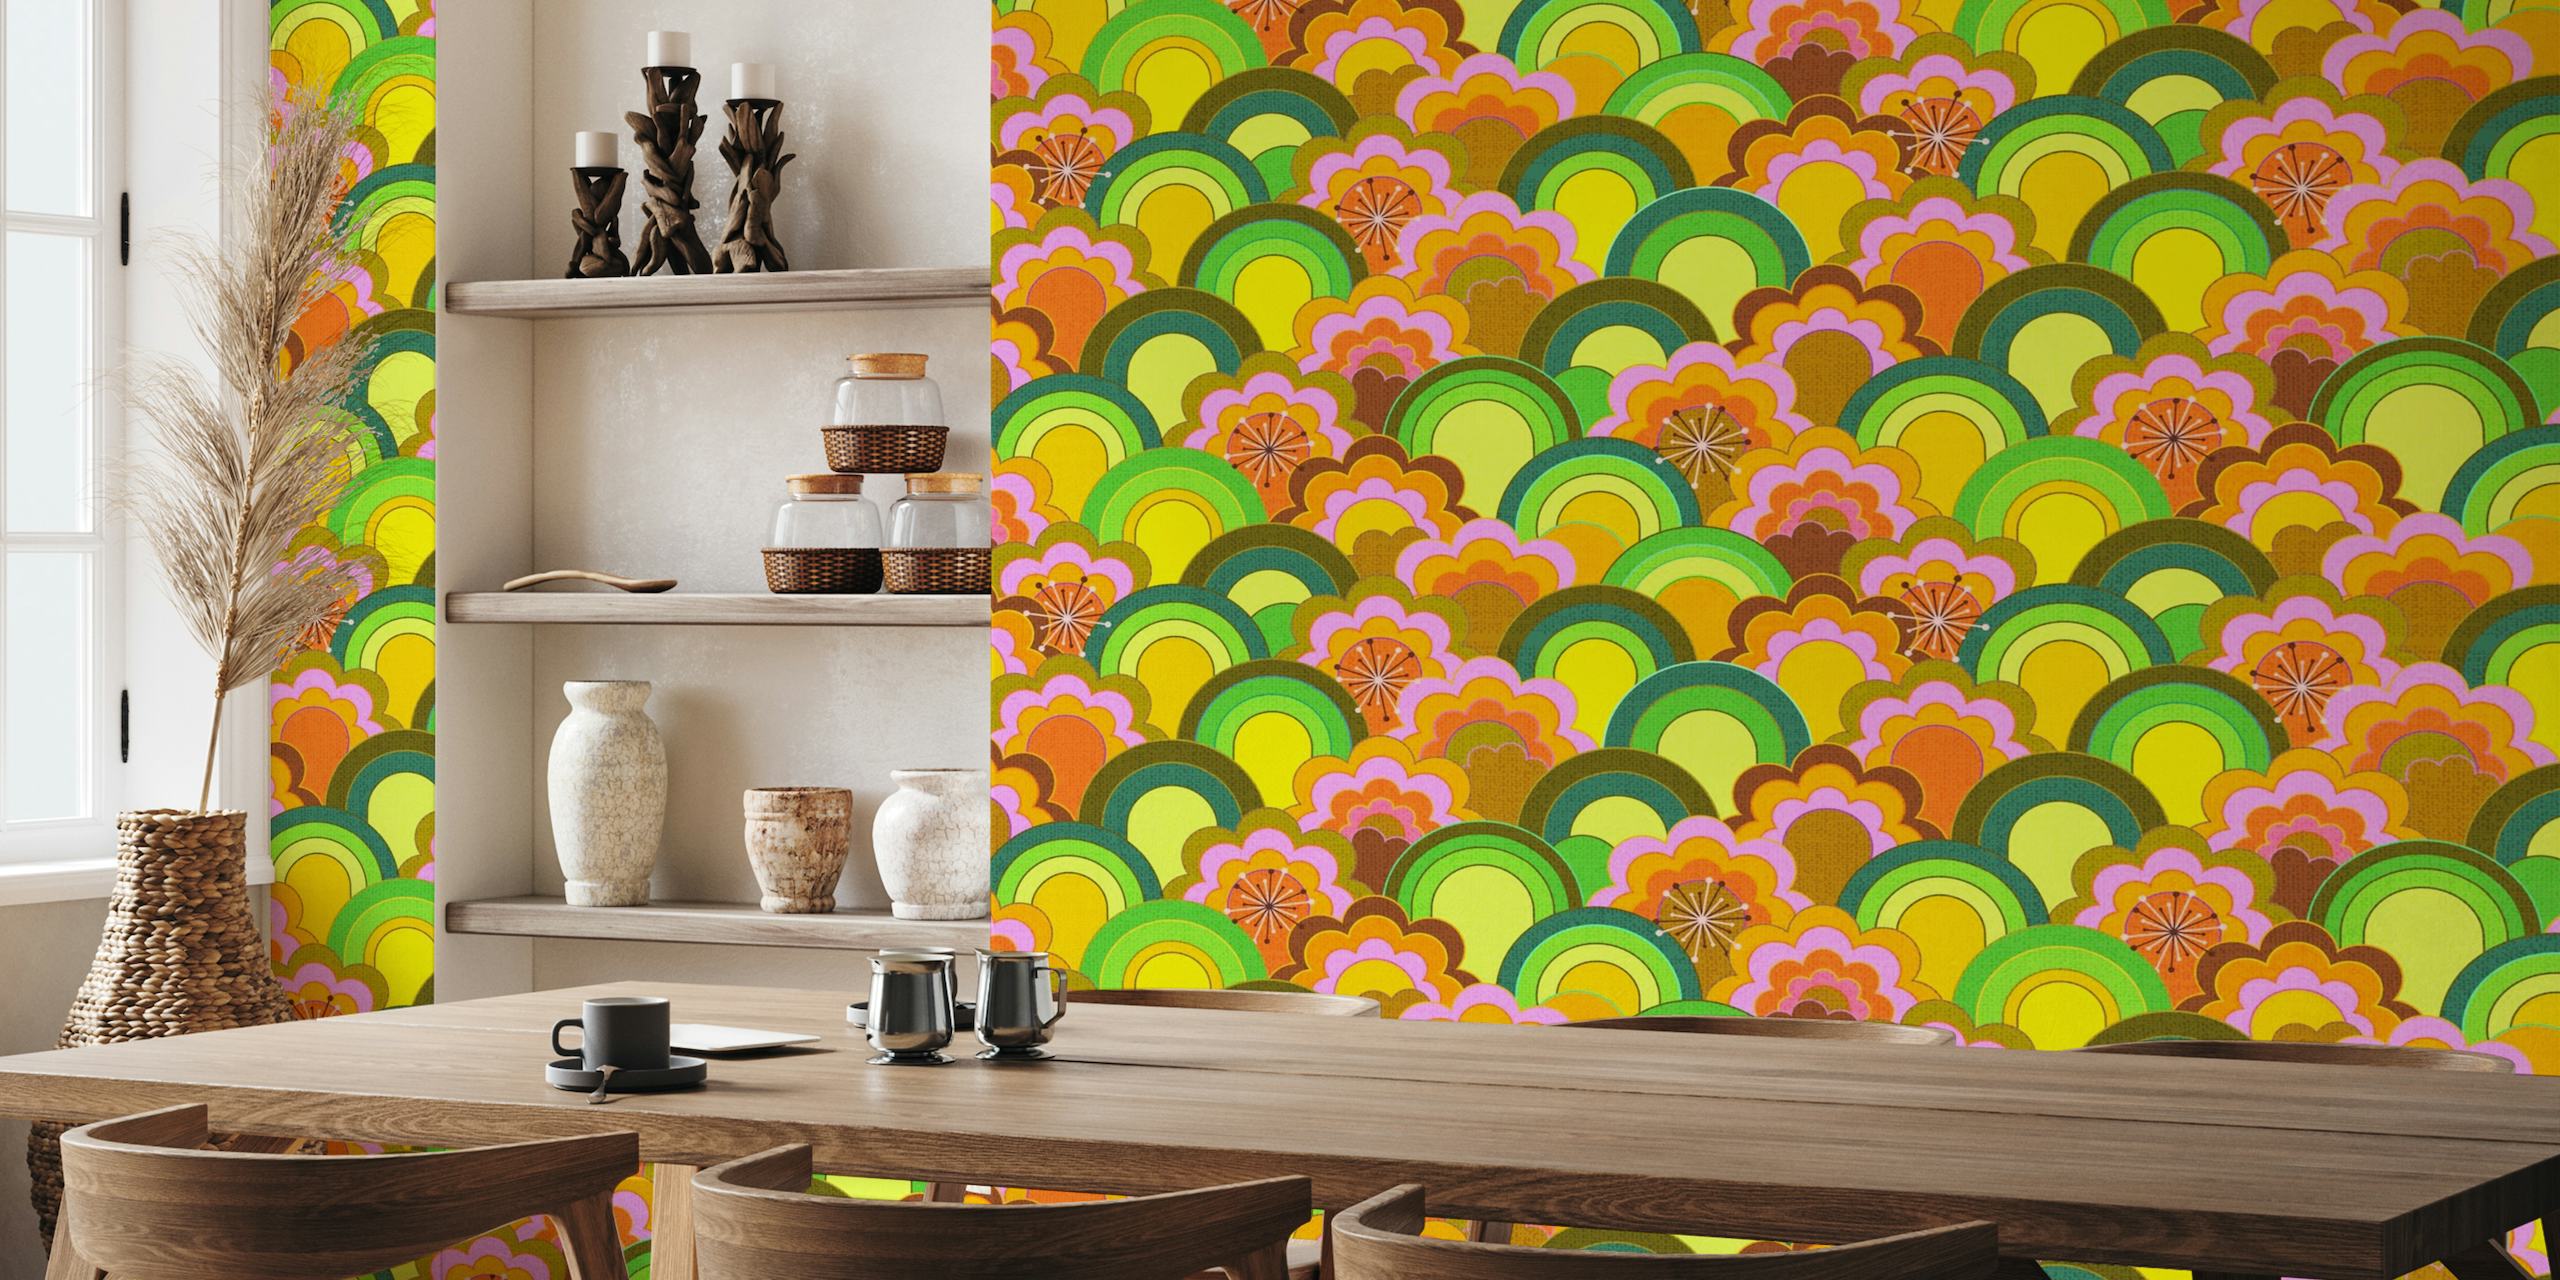 Fargerikt 70-tallsinspirert veggmaleri med regnbueblomster med et teksturert utseende